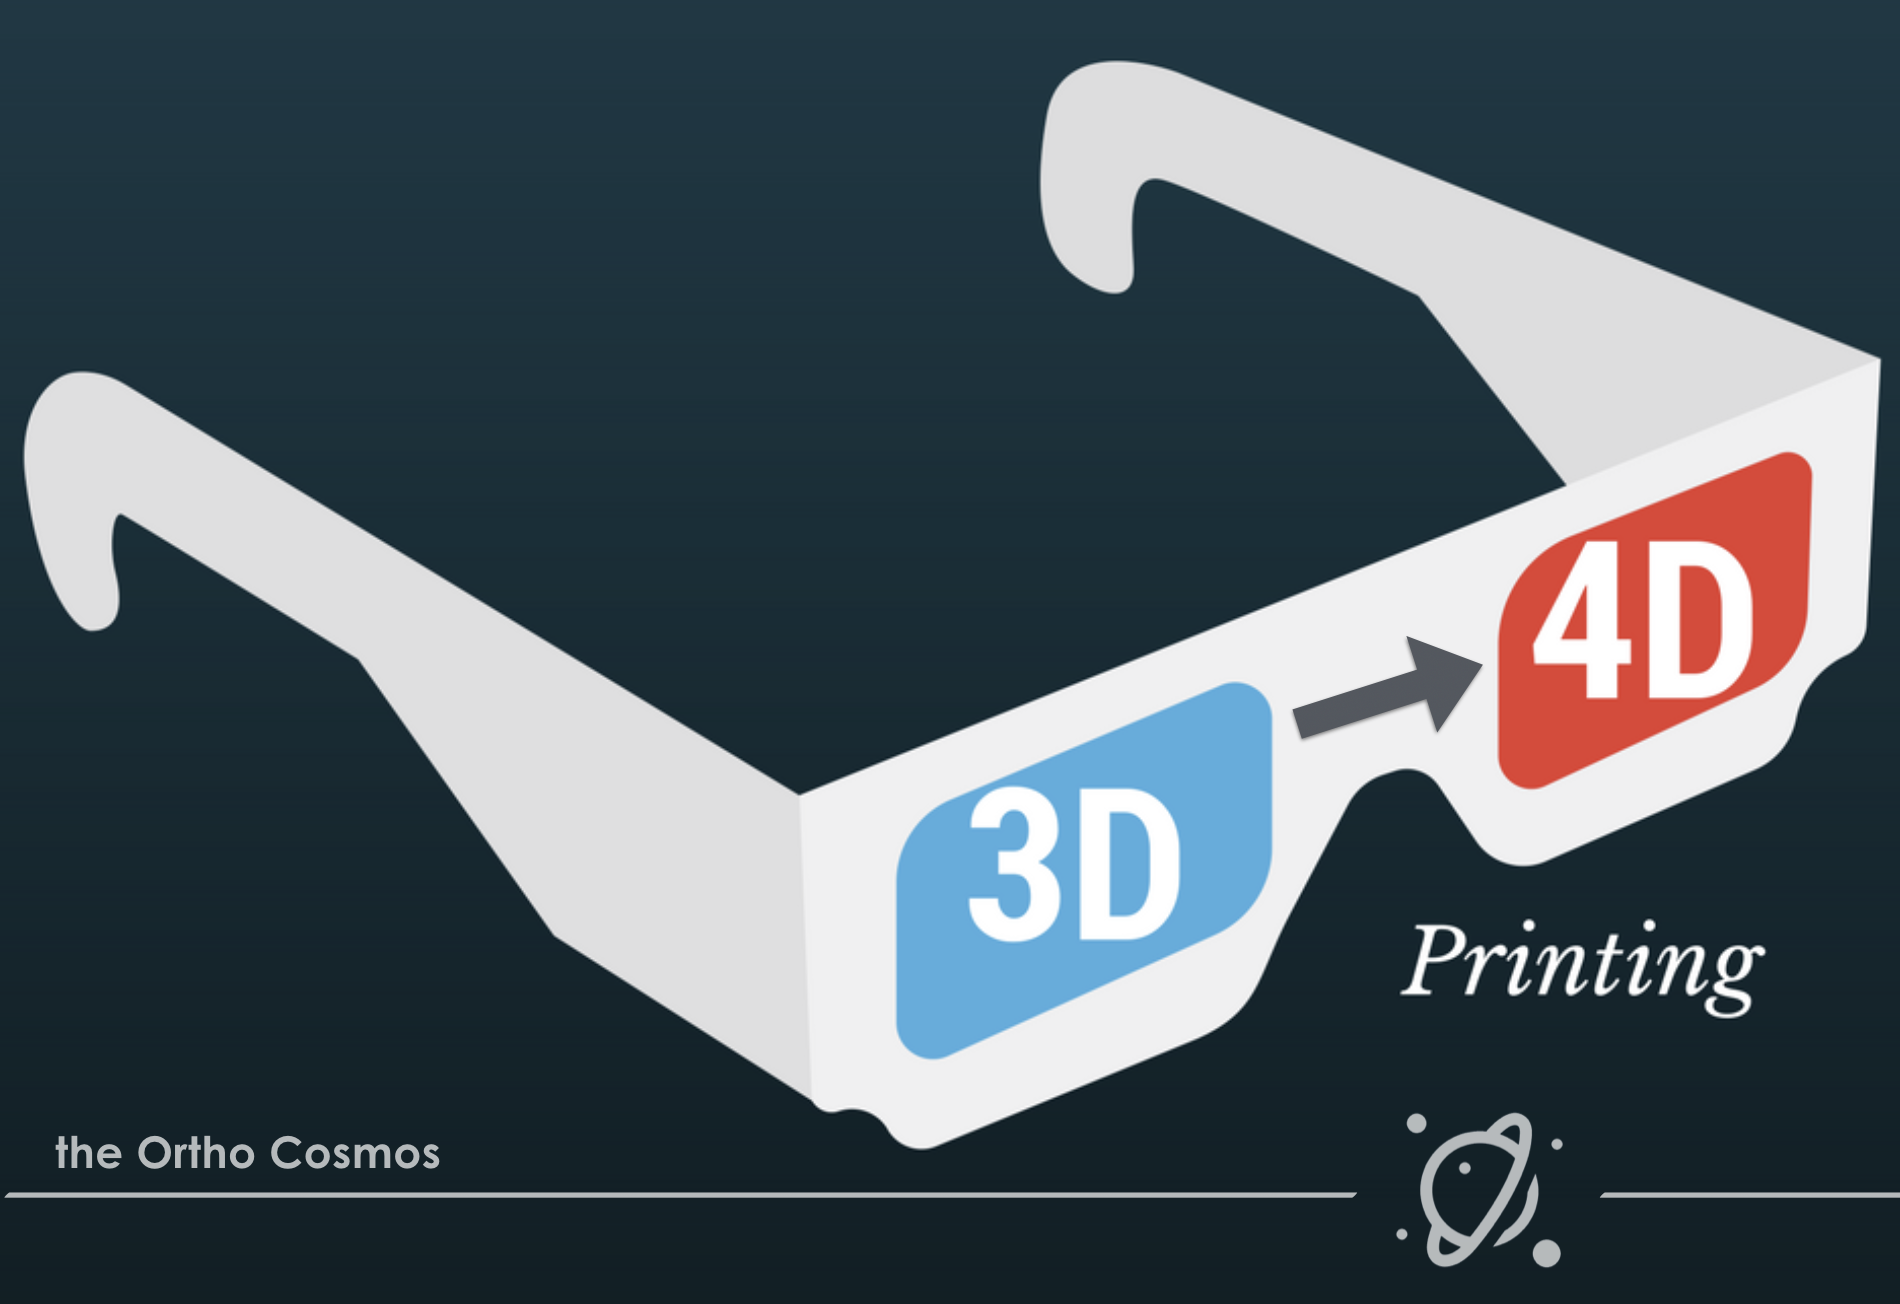 Is Digital 3D same as 4D?